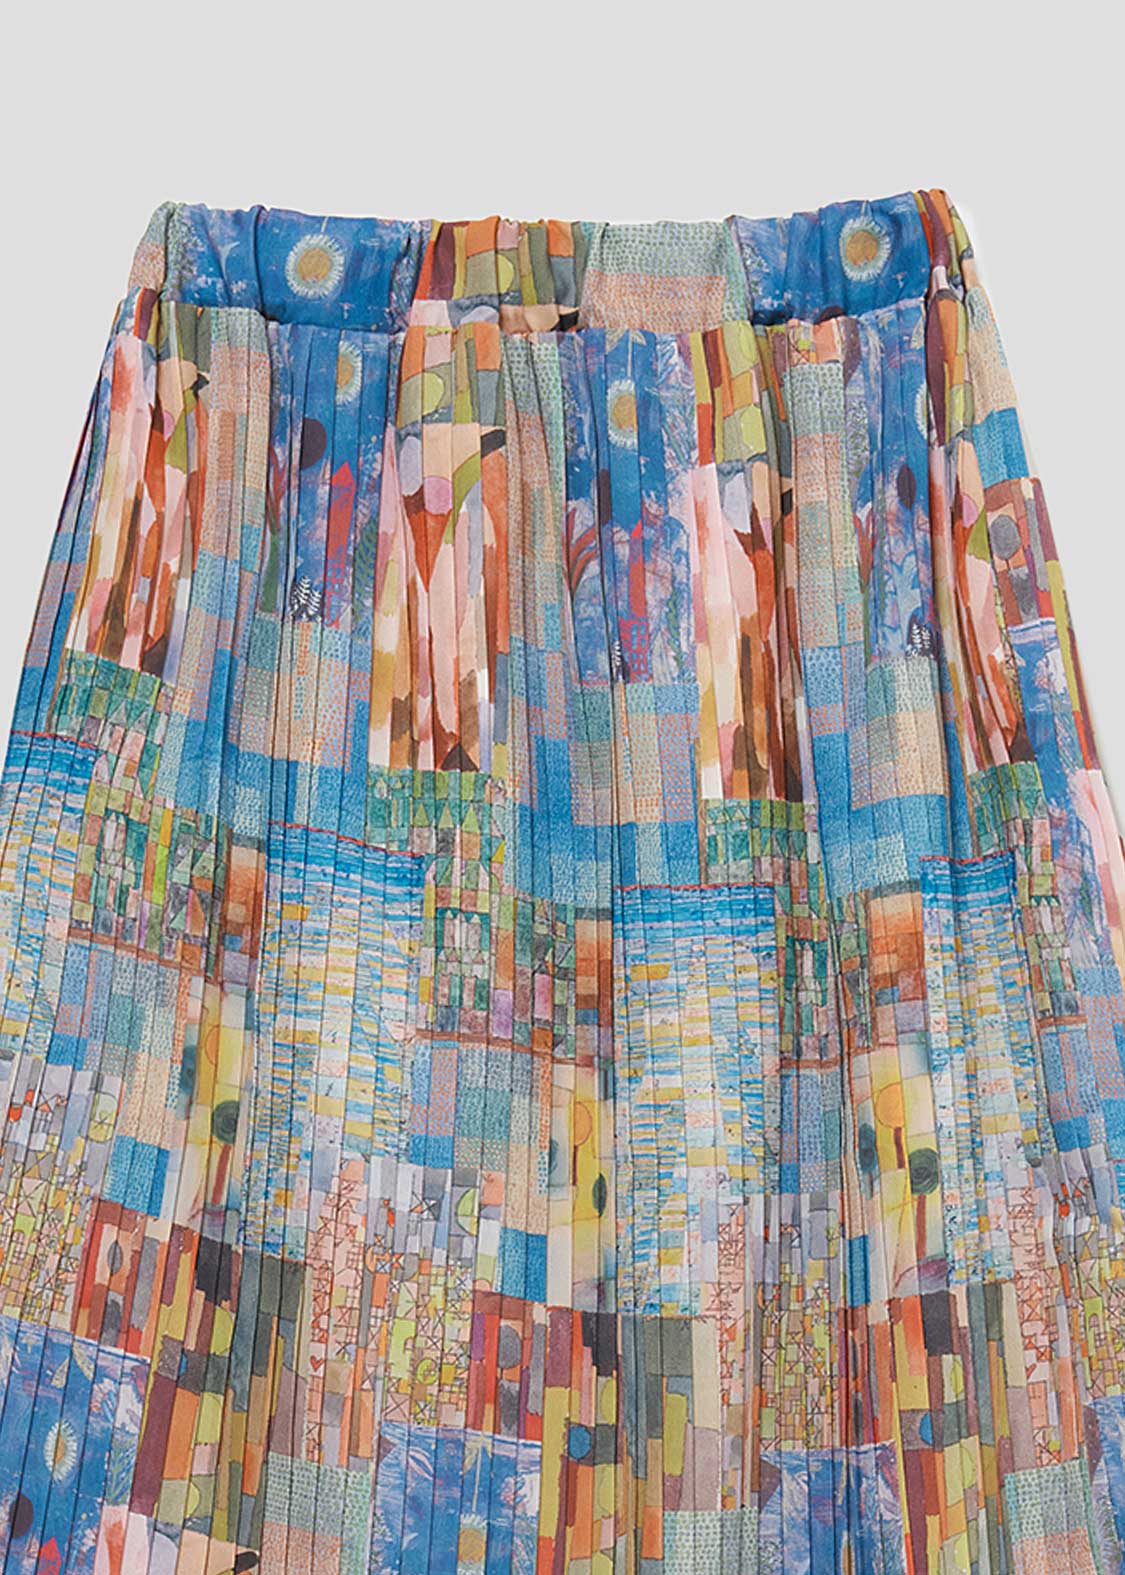 Paul Klee Pleats Skirt (Paul Klee_Paul Klee Pattern)